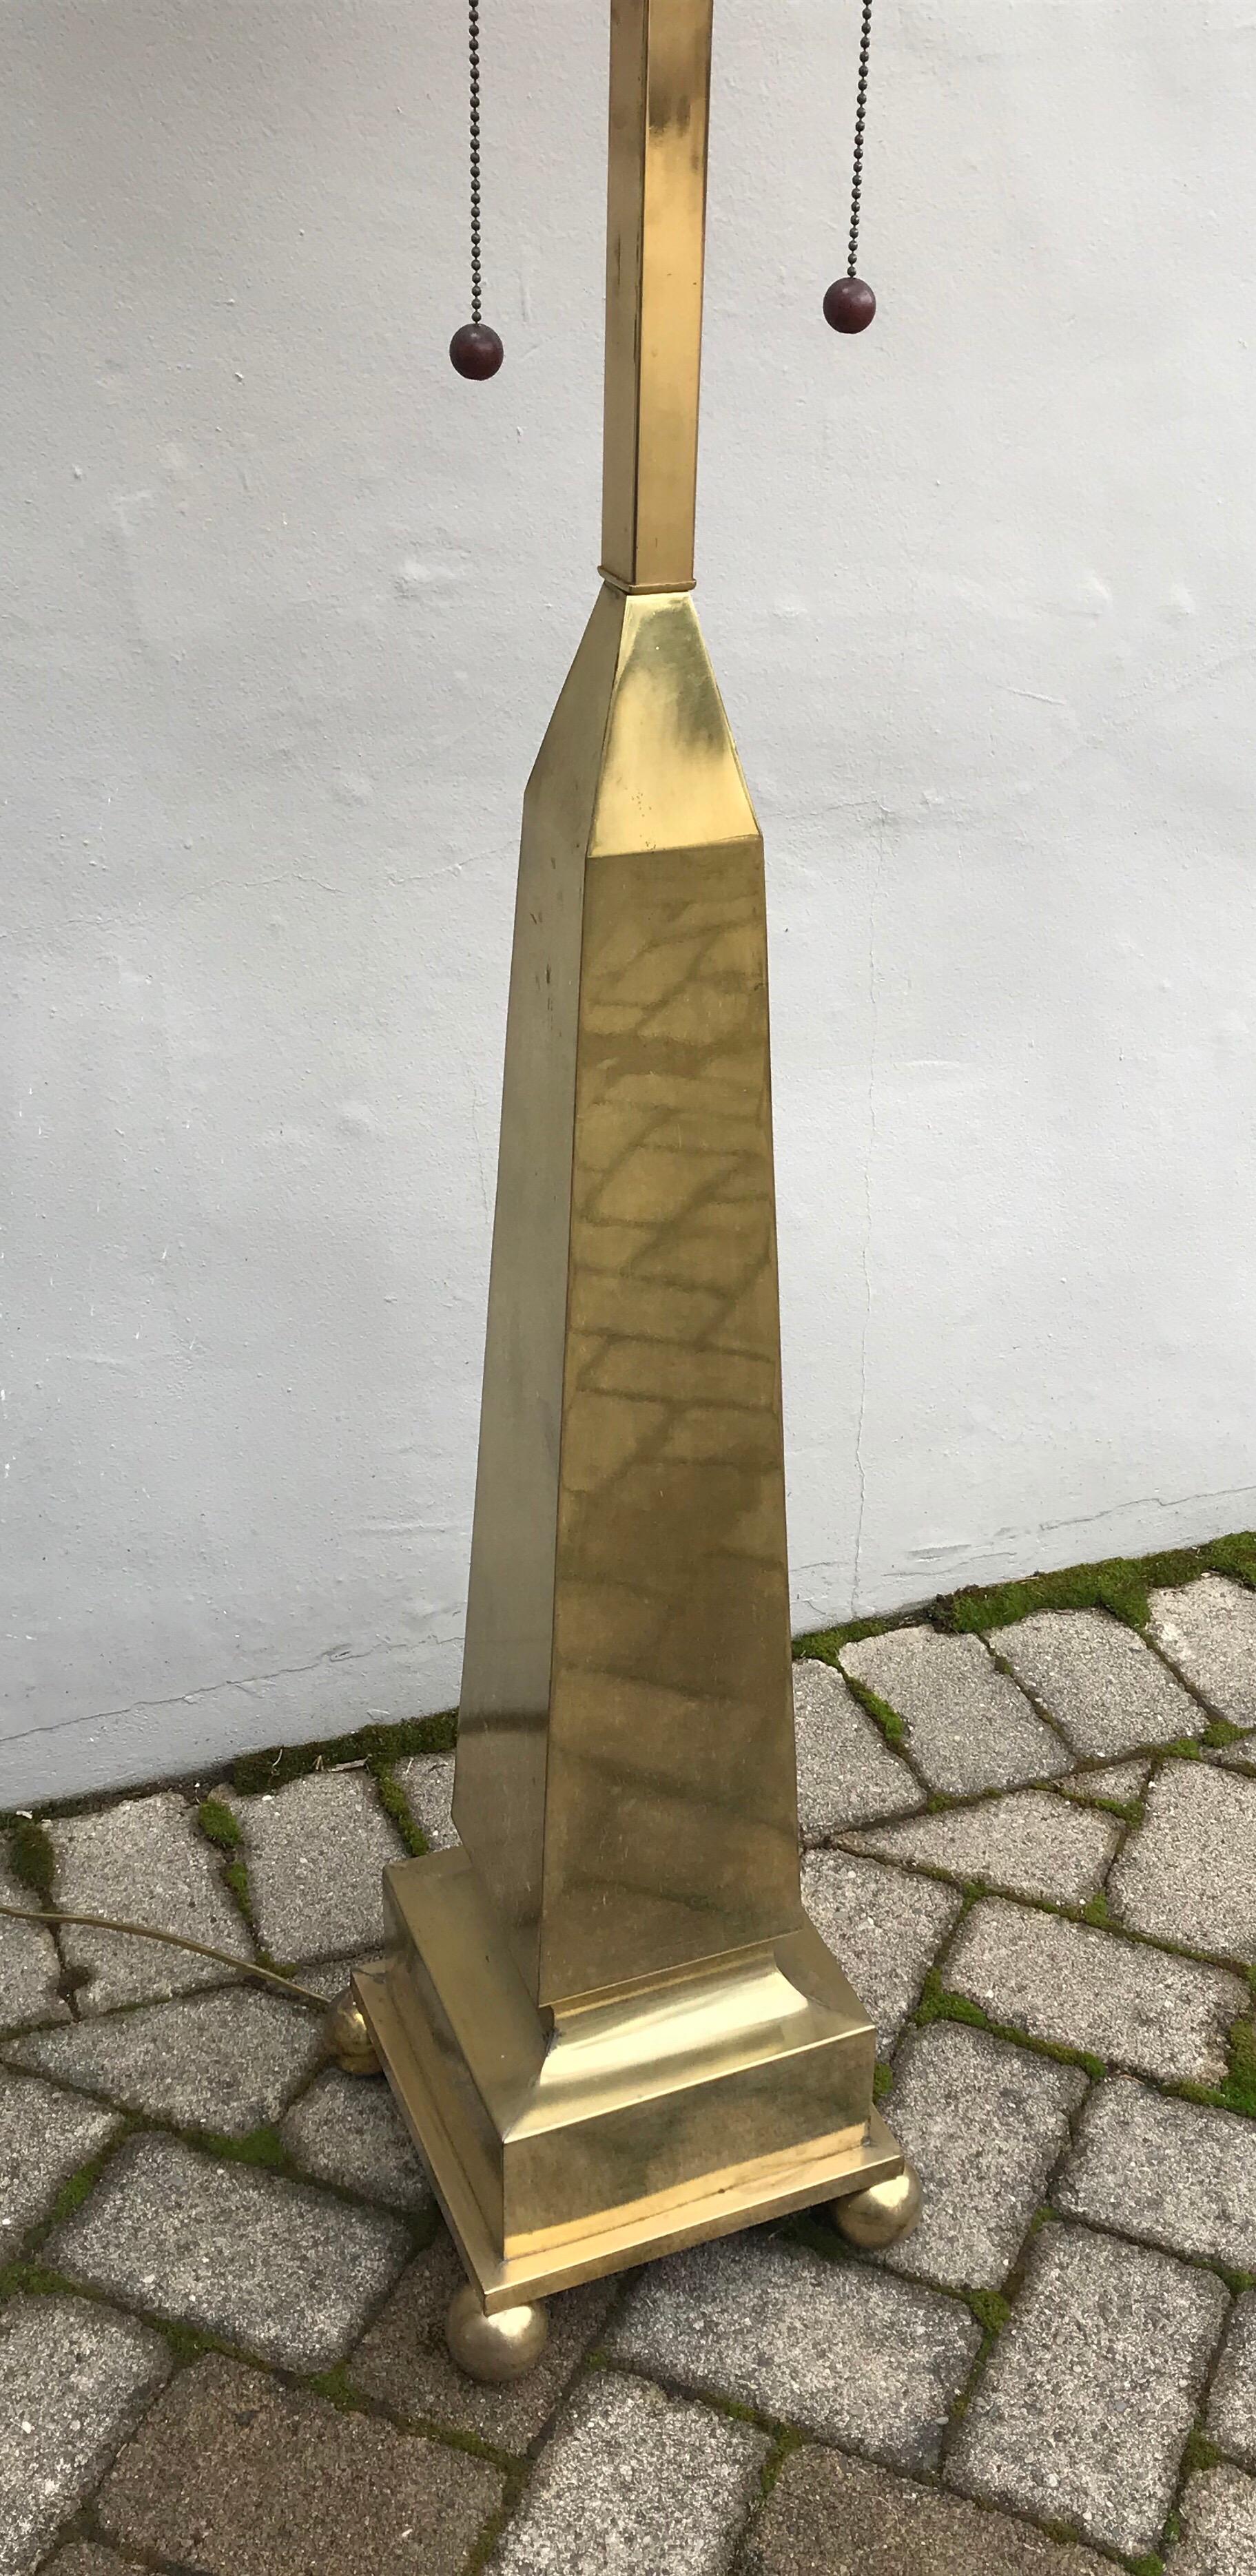 Lampadaire pyramidal en laiton de style Hollywood Regency par Marbro Lamp Company. années 1970, belle patine.
En état de marche mais le recâblage est recommandé, l'abat-jour n'est pas inclus.